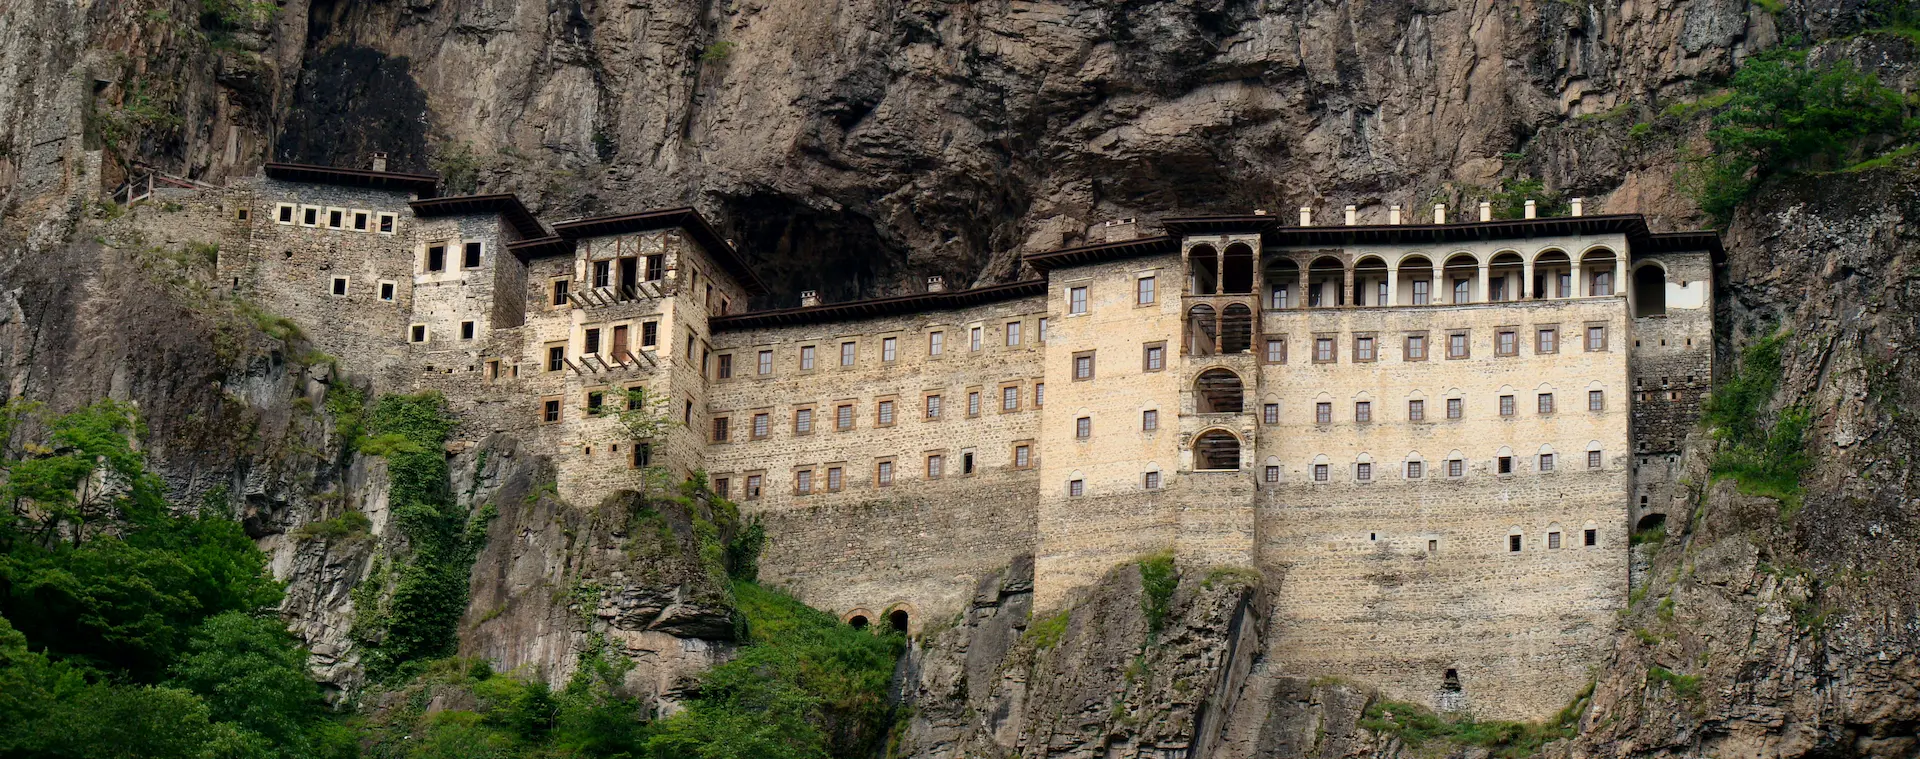 Le monastère de Sümela, on voit des bâtiments avec plusieurs étages de fenêtres accrochés à une falaise.